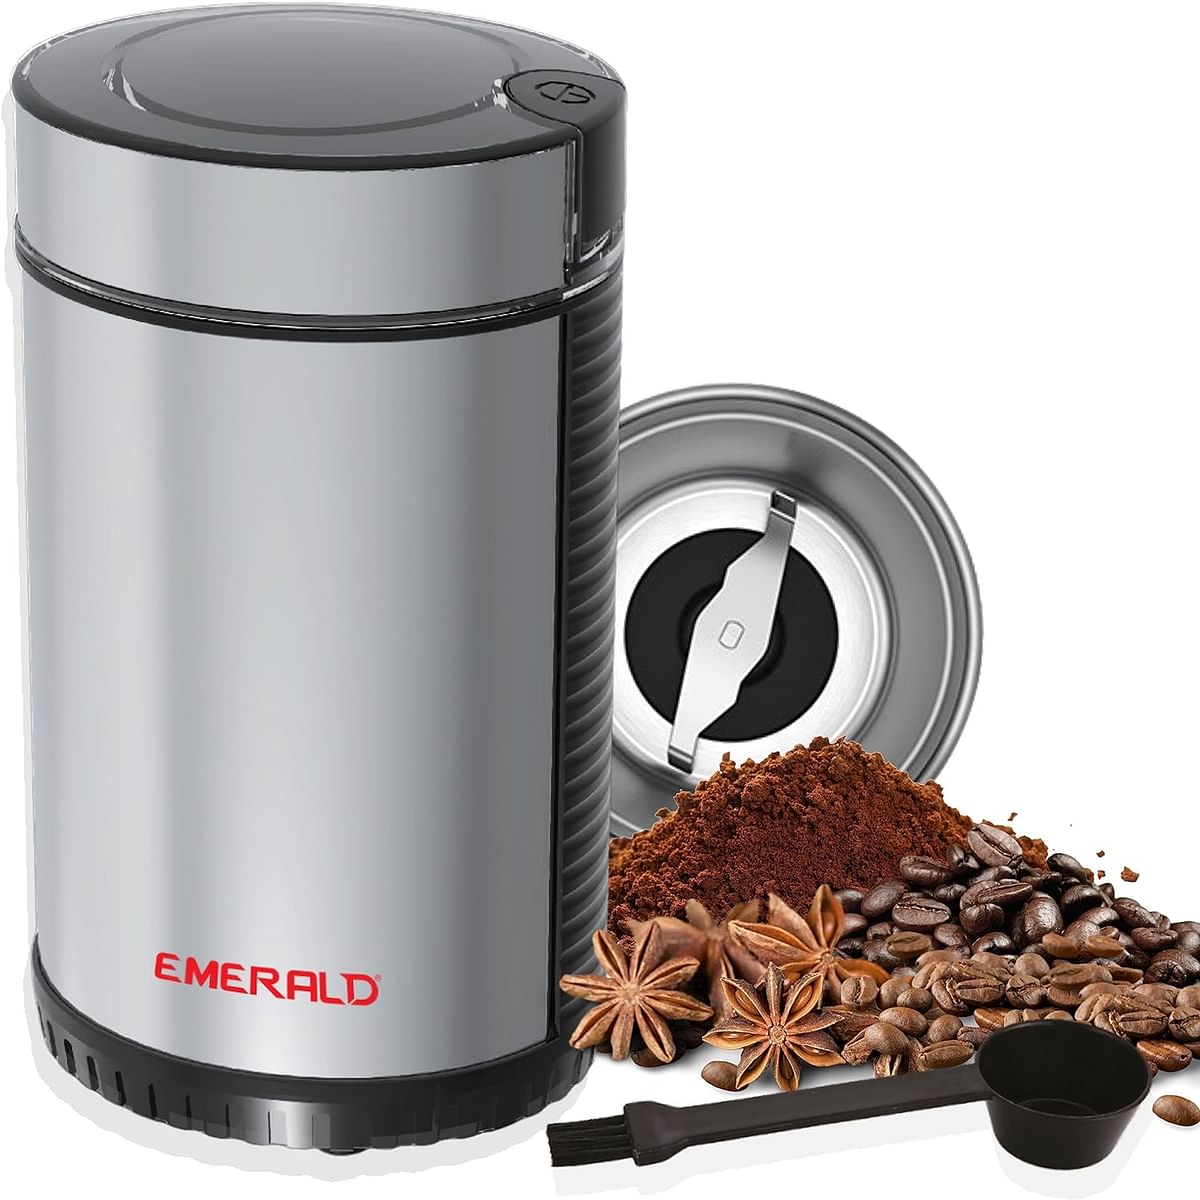 مطحنة القهوة والتوابل من إميرالد، هيكل من الفولاذ المقاوم للصدأ وكوب قابل للفصل، سعة 90 جرام، 150 واط، EK792CG.